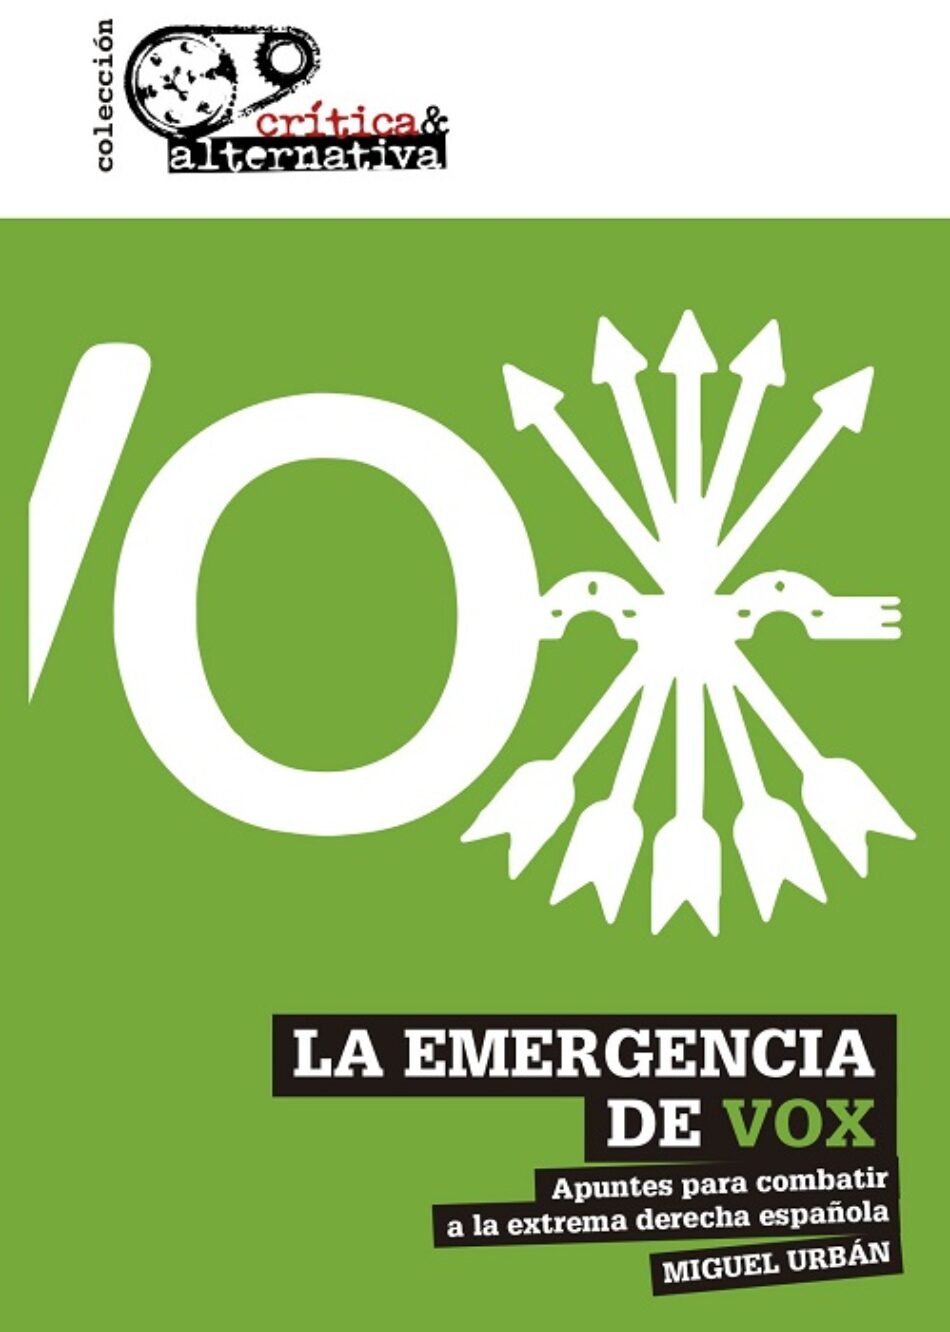 ‘La emergencia de Vox’. El nuevo libro de Miguel Urbán